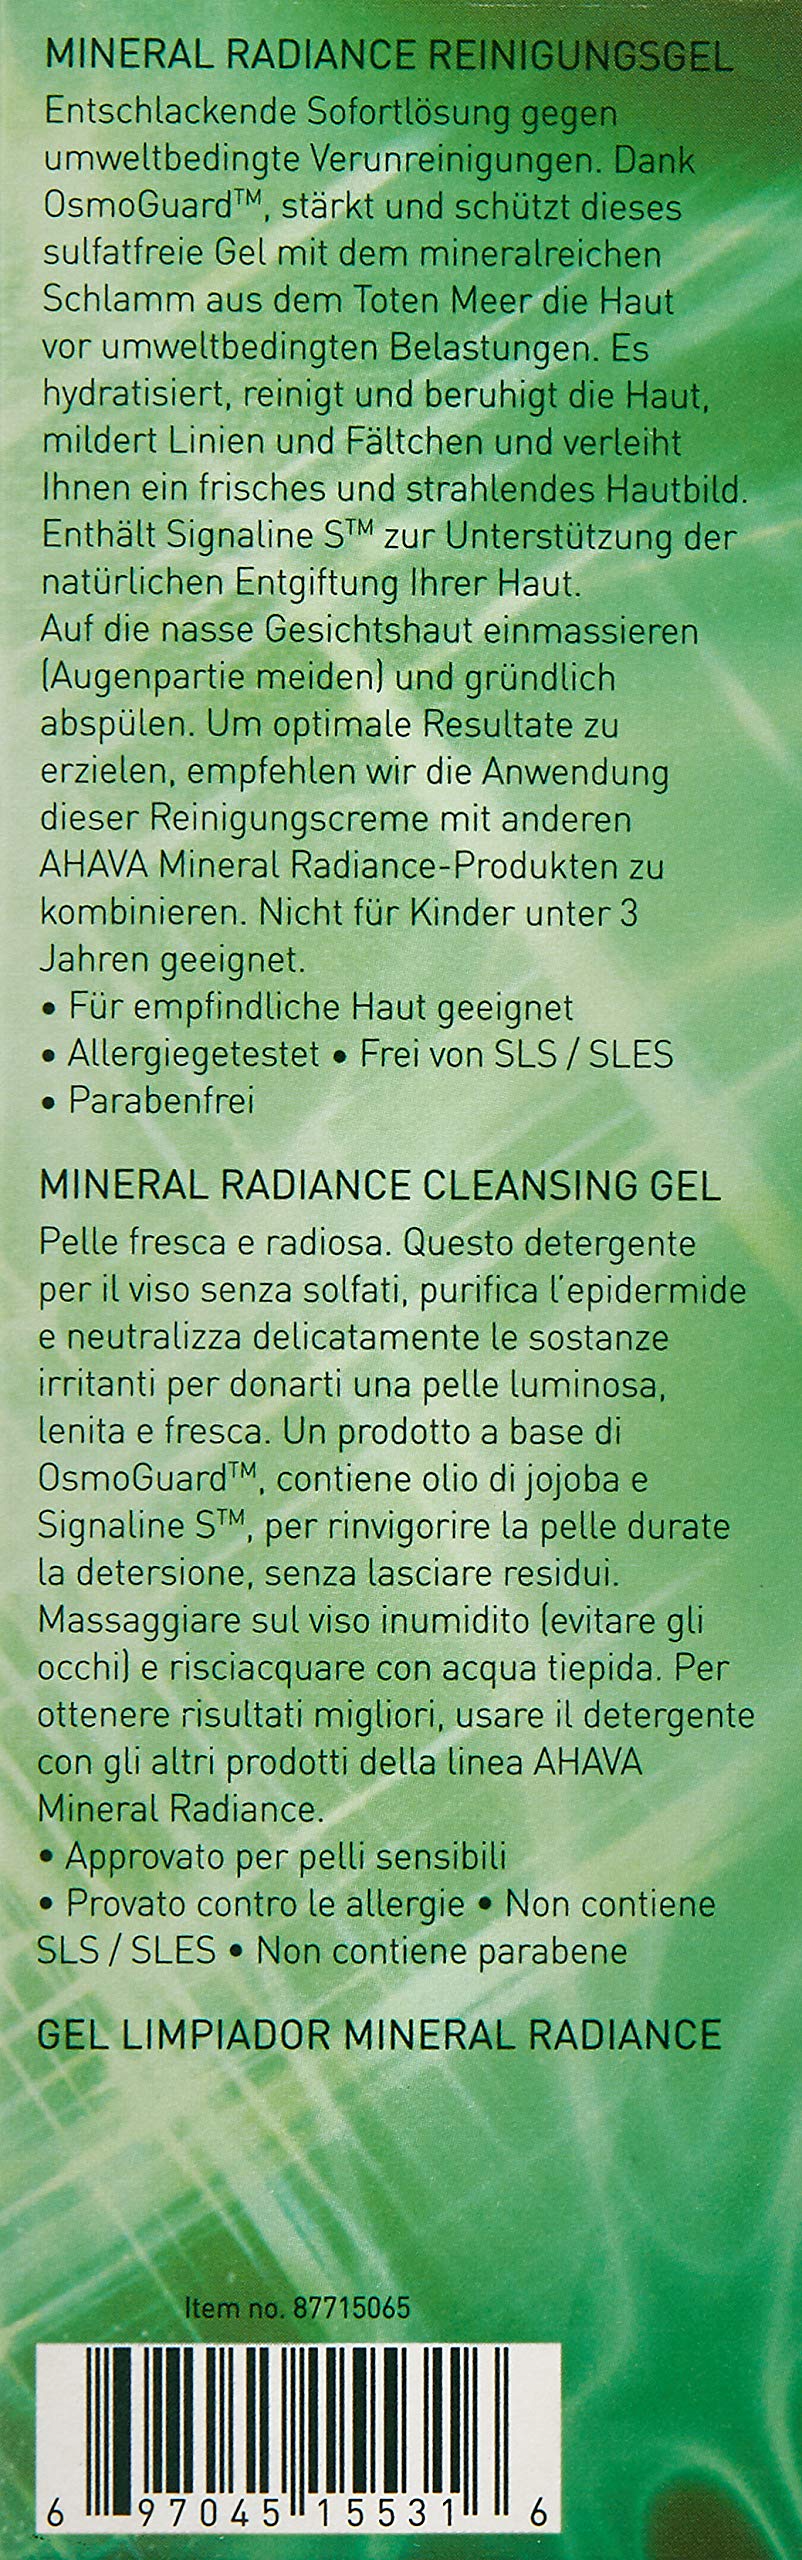 AHAVA Mineral Radiance Cleansing Gel, 3.4 Fl Oz